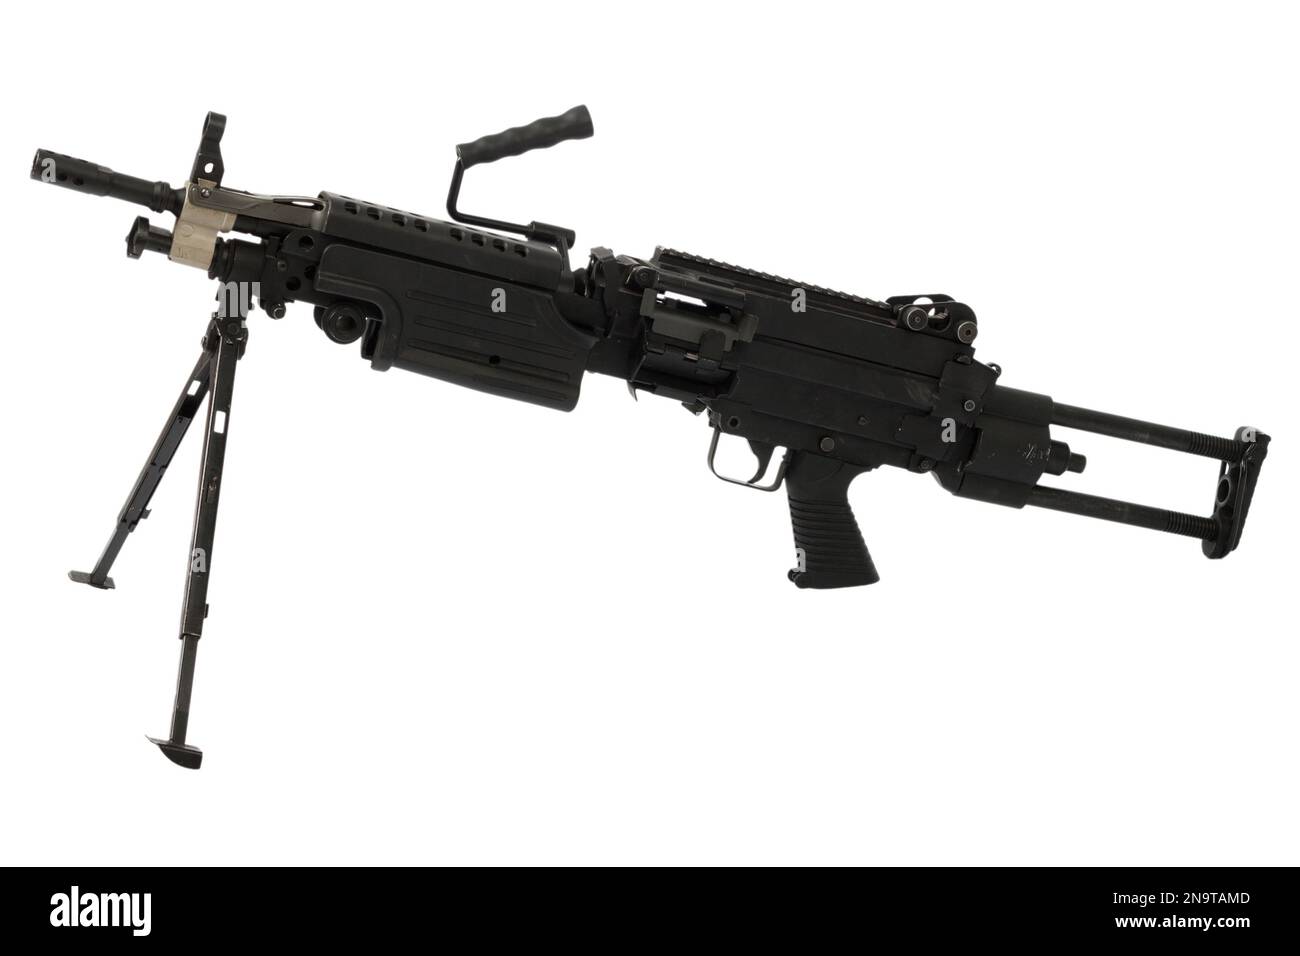 M249 scie à canon mécanique légère 'Para' - arme automatique Squad, largement utilisée aux États-Unis Forces armées. Isolé sur fond blanc. Banque D'Images